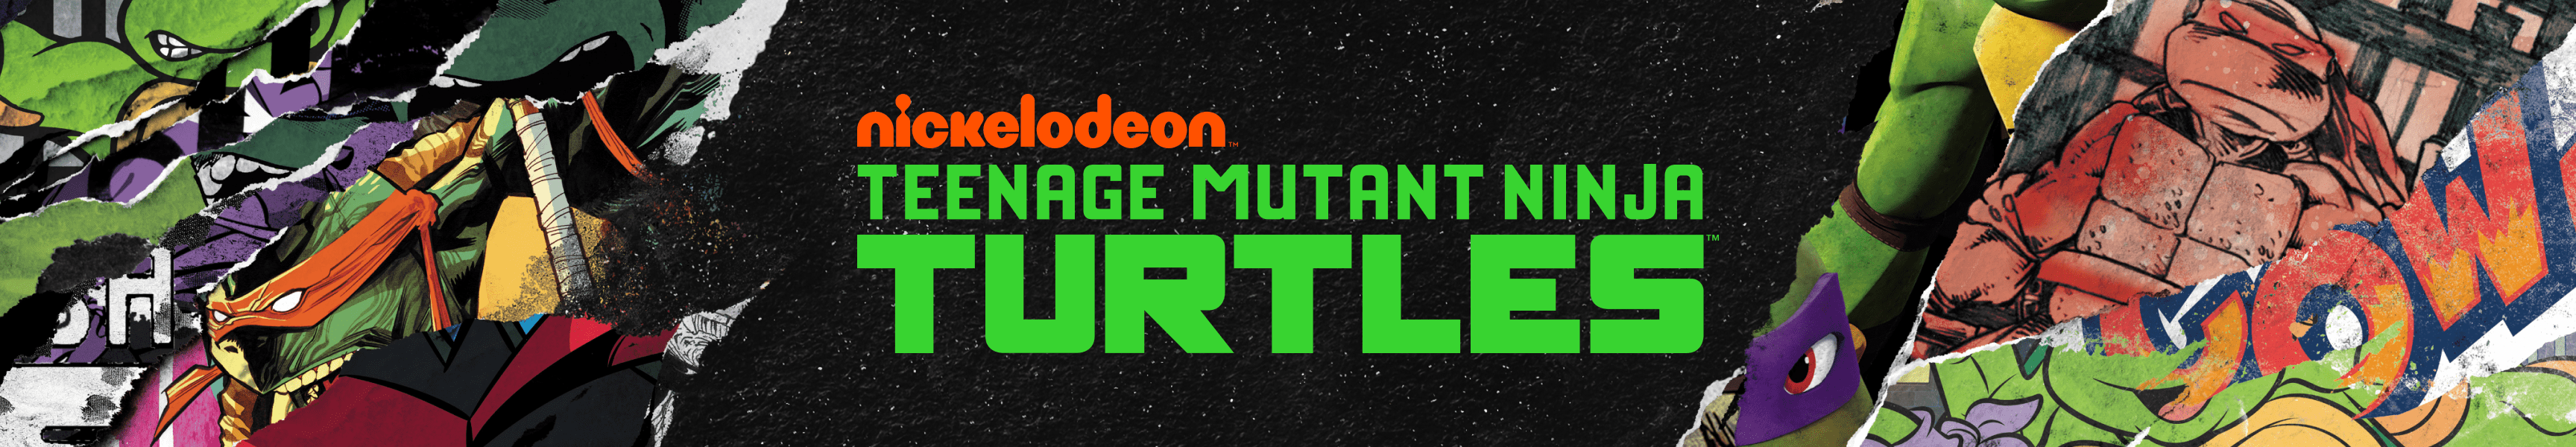 Teenage Mutant Ninja Turtles Coleccionables